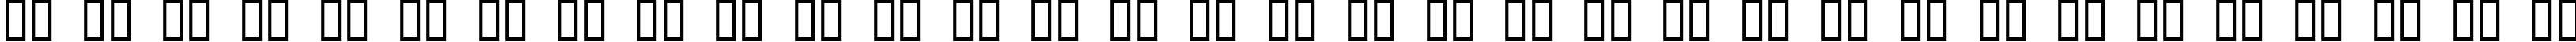 Пример написания русского алфавита шрифтом Shredder